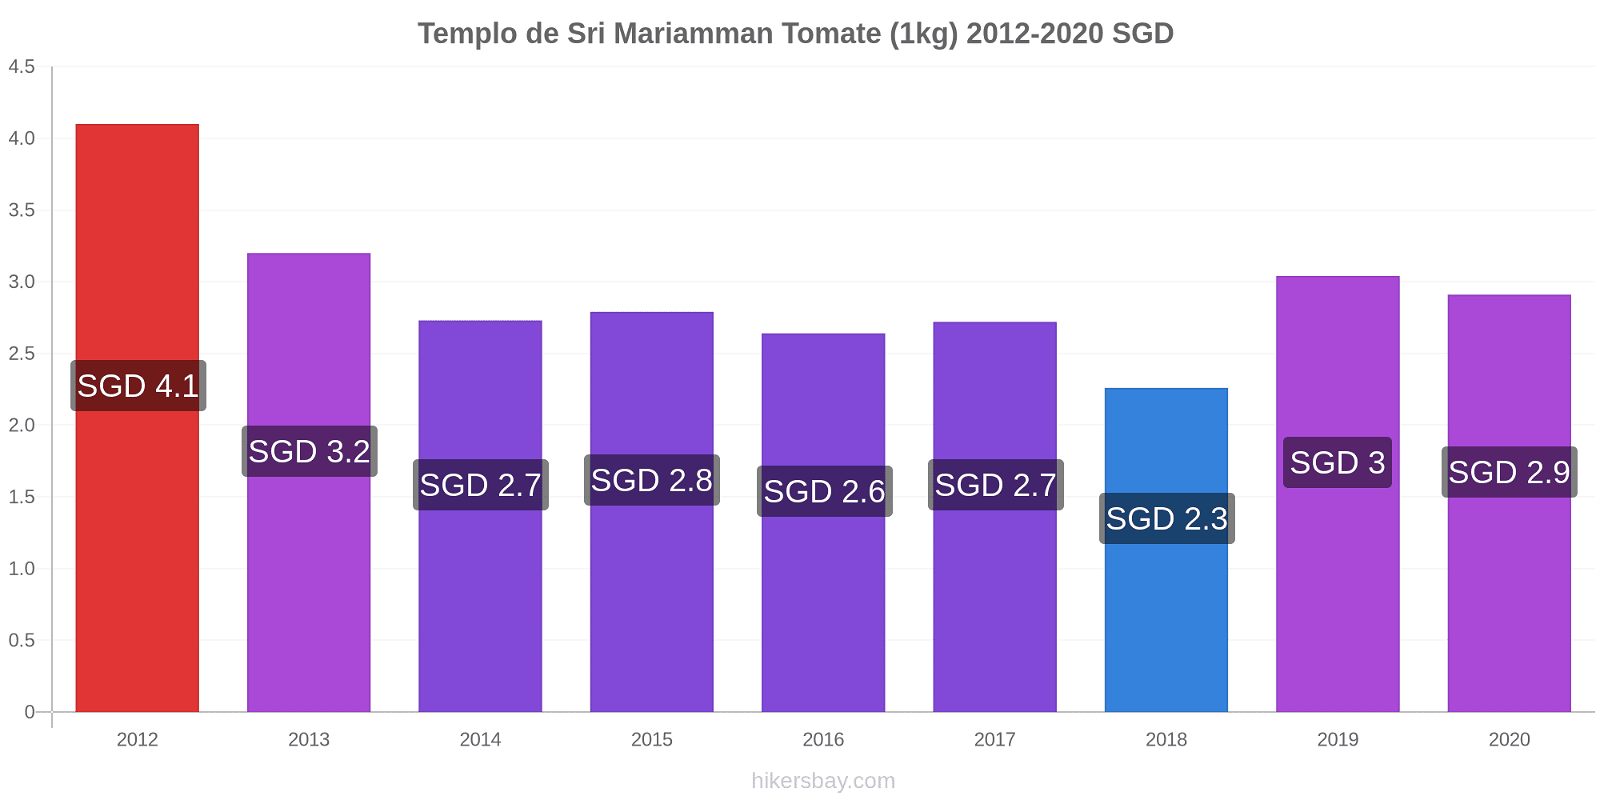 Templo de Sri Mariamman cambios de precios Tomate (1kg) hikersbay.com